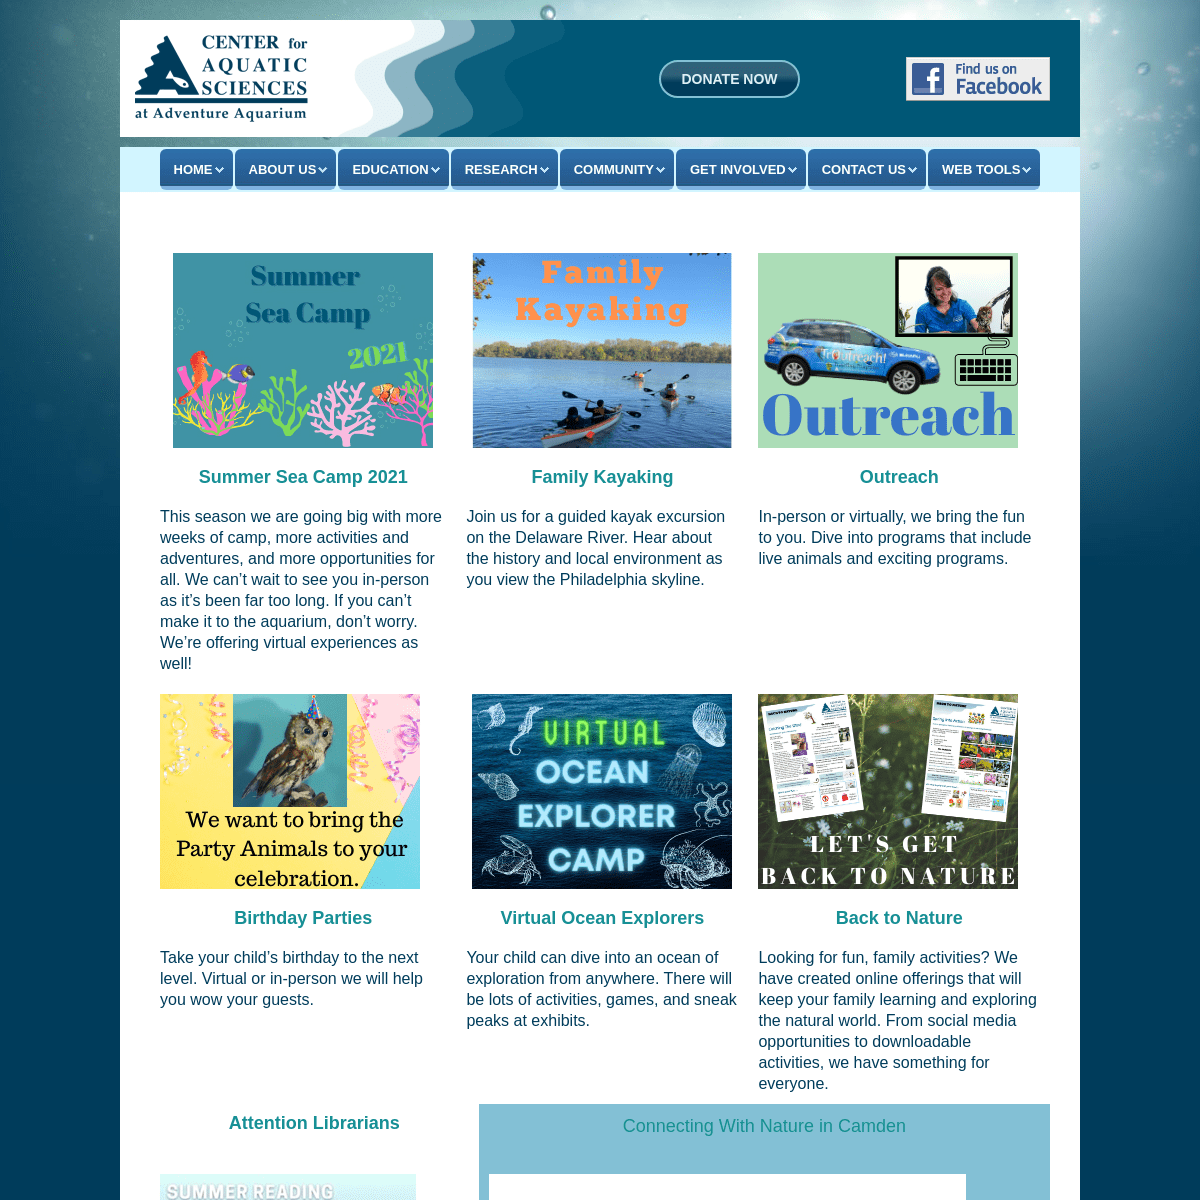 A complete backup of https://aquaticsciences.org